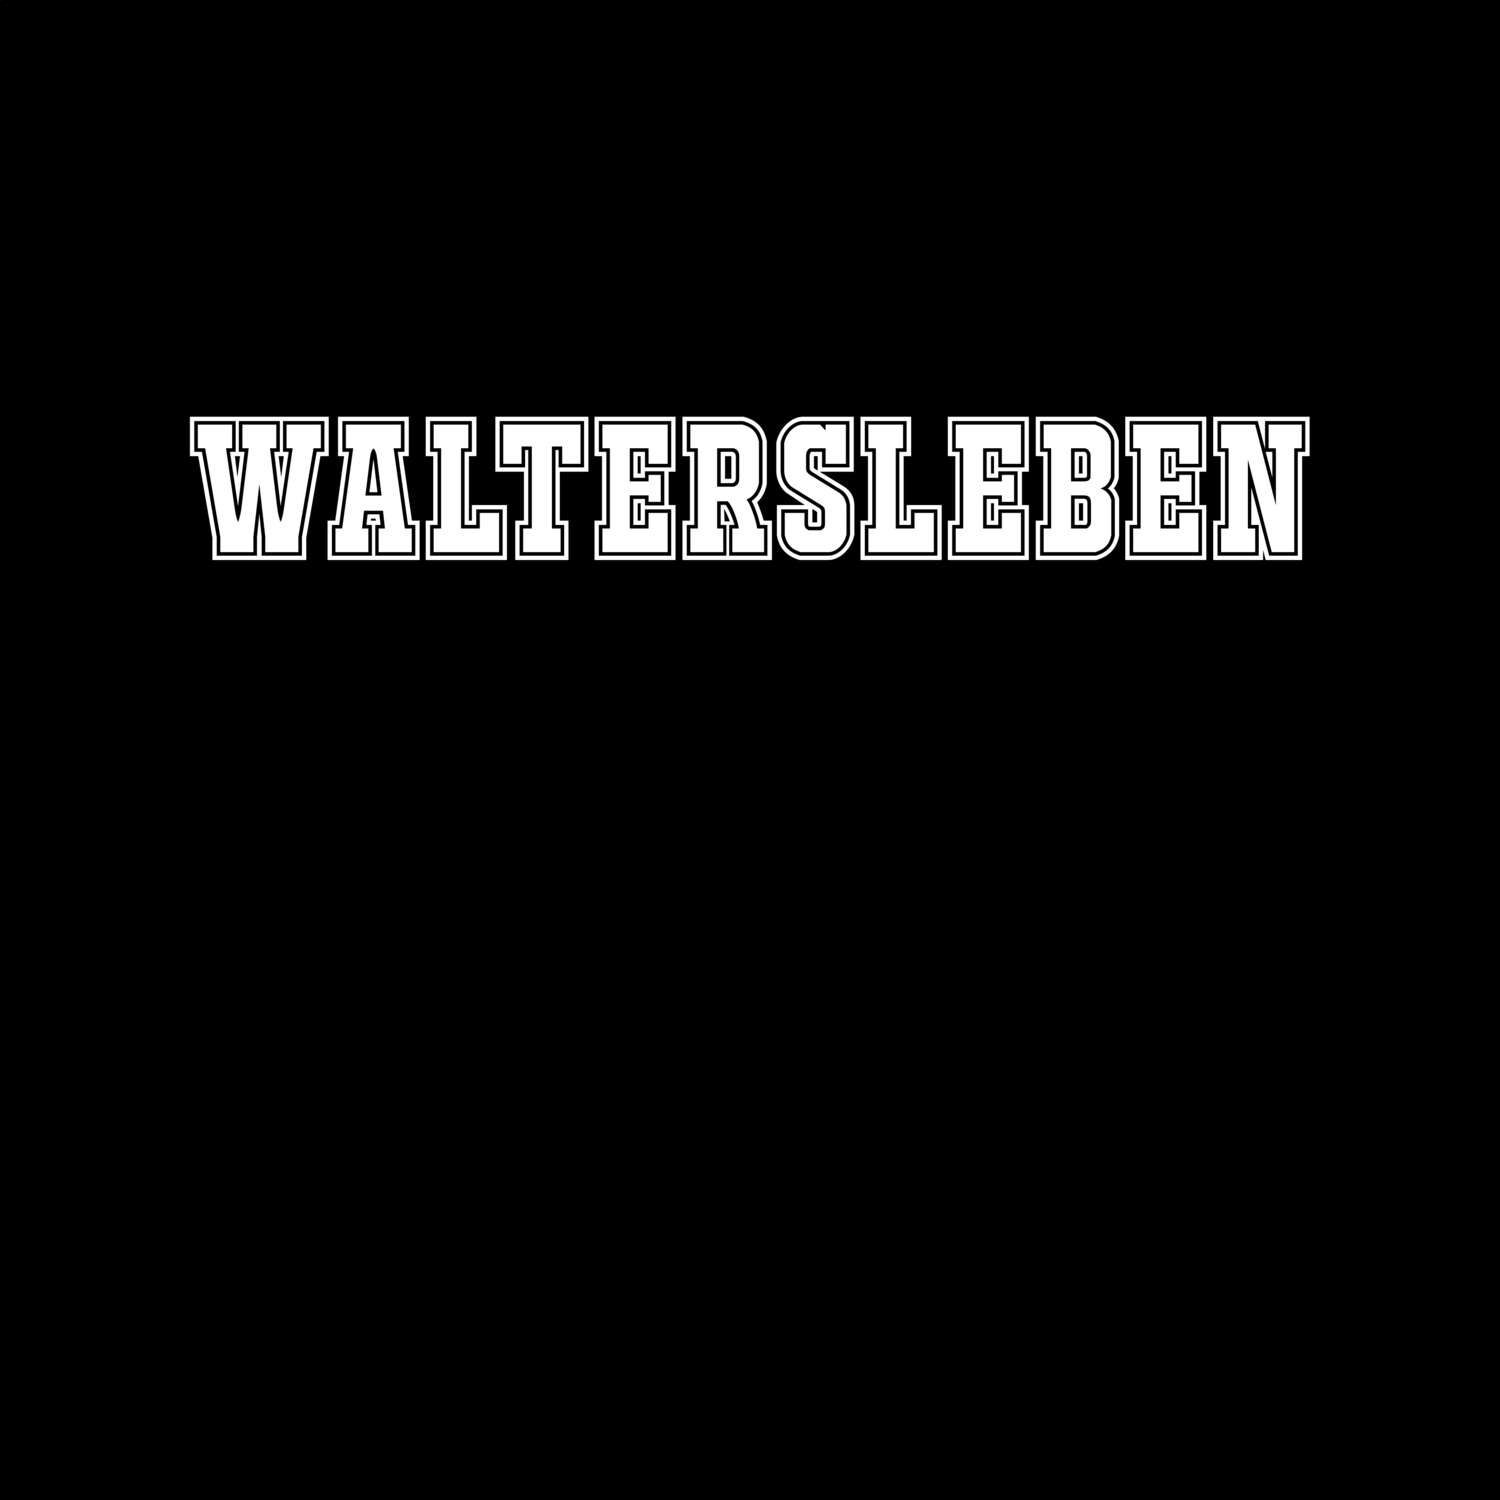 Waltersleben T-Shirt »Classic«